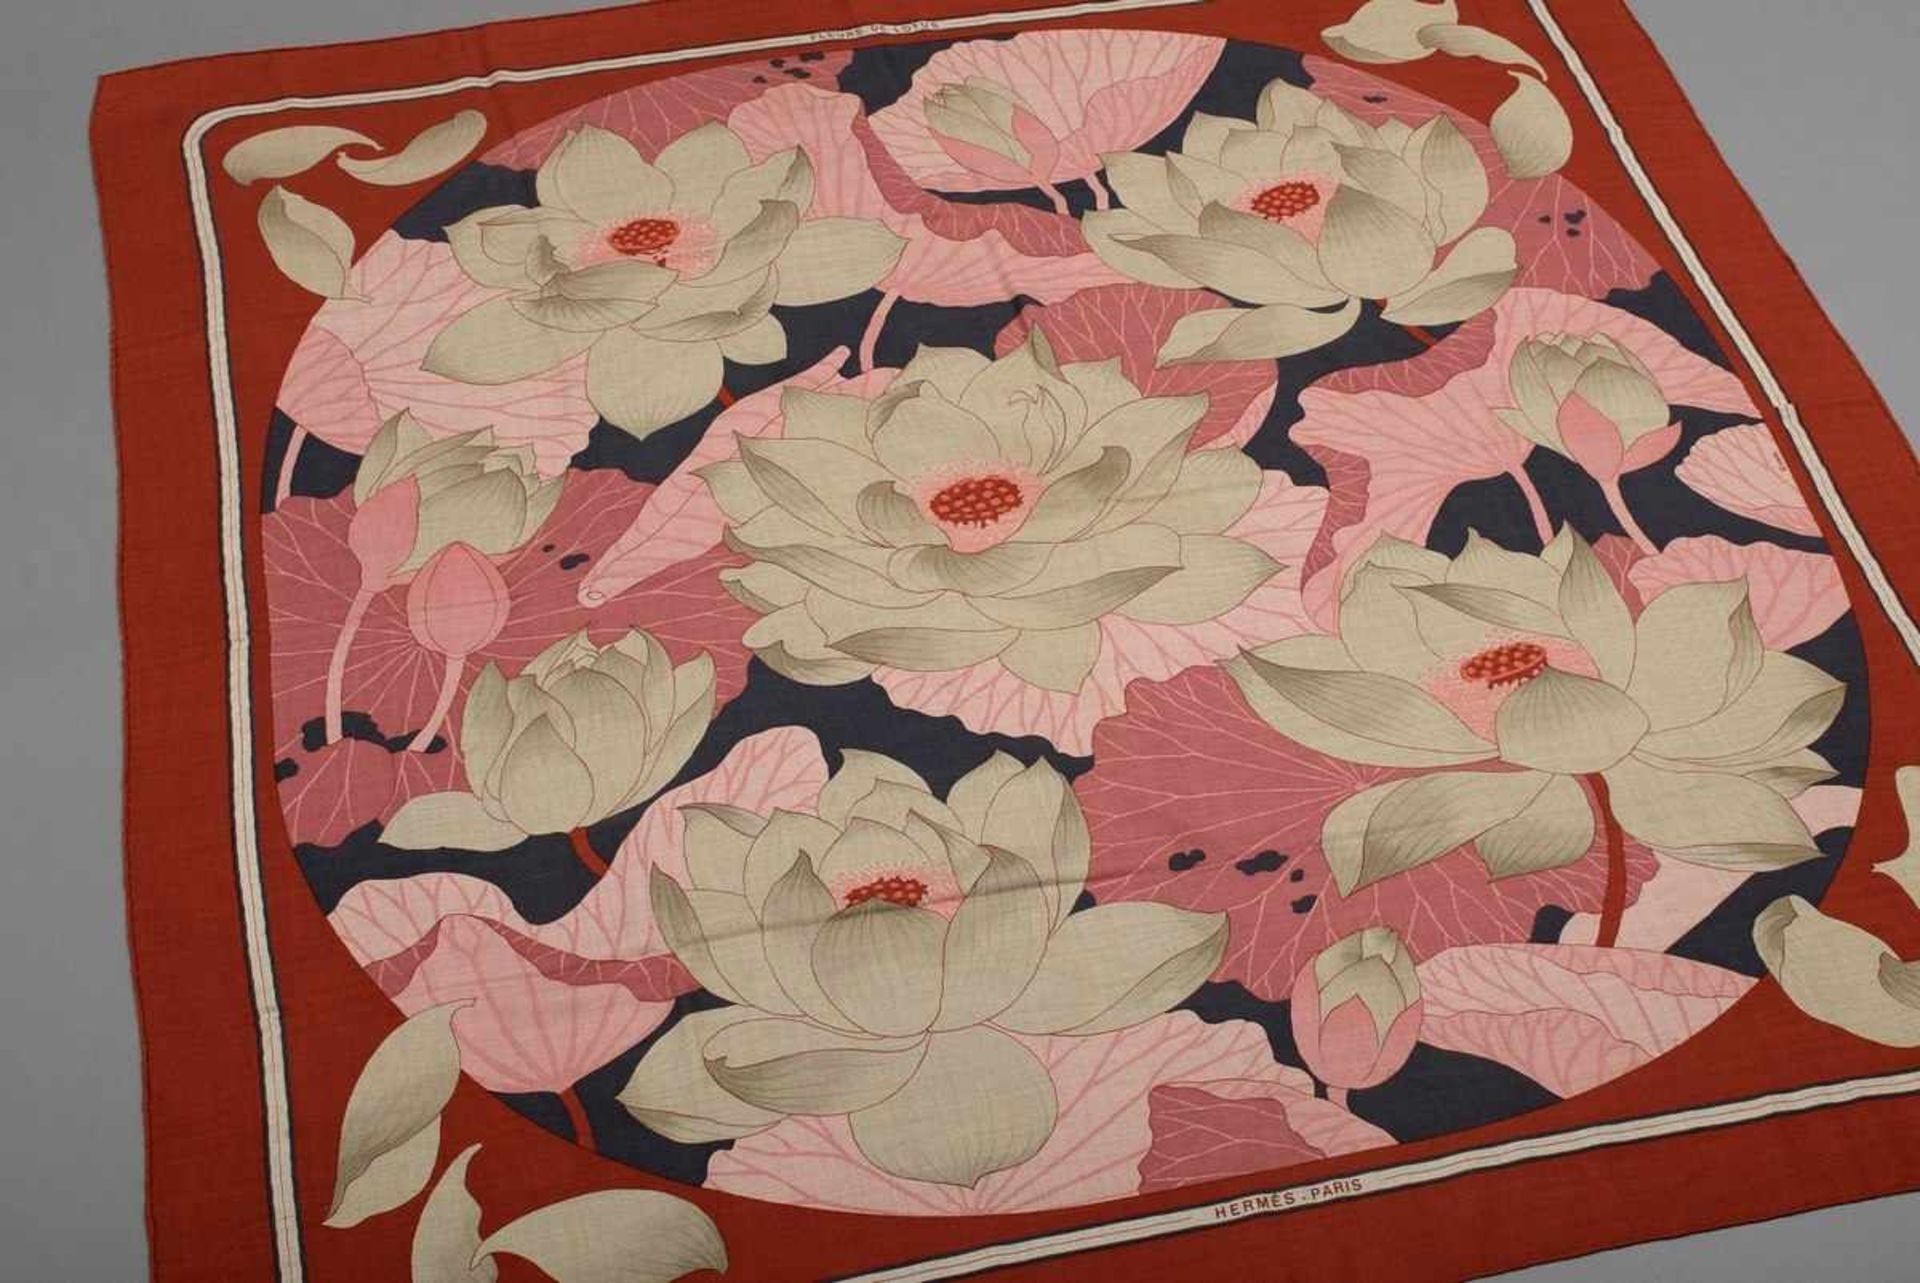 Hermès scarf "Fleur de Lotus" dark red/khaki/rosé/anthracite, designed by Christiane de Vauzelles